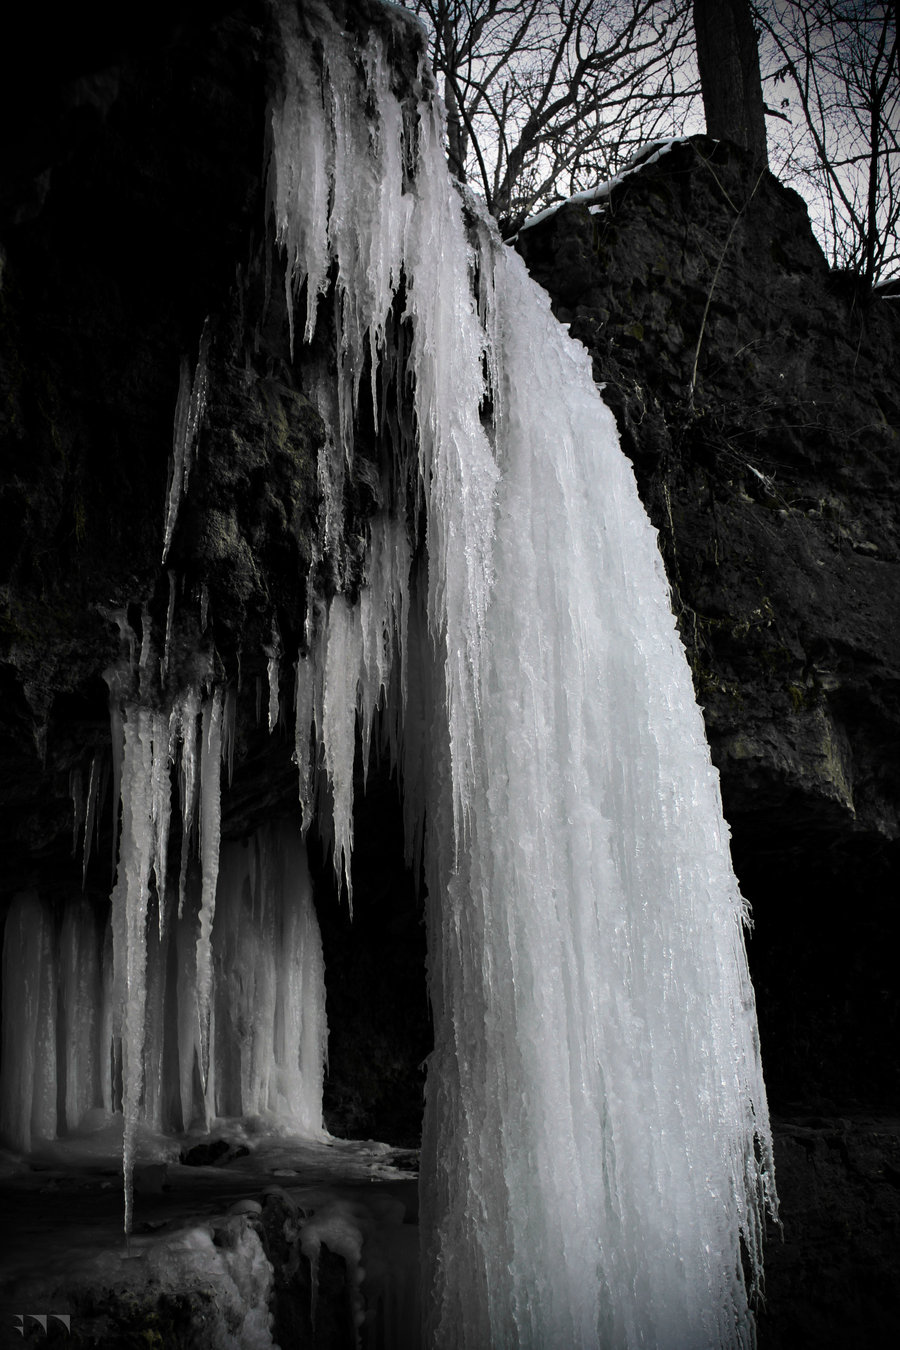 Frozen Waterfall 4 - 2011